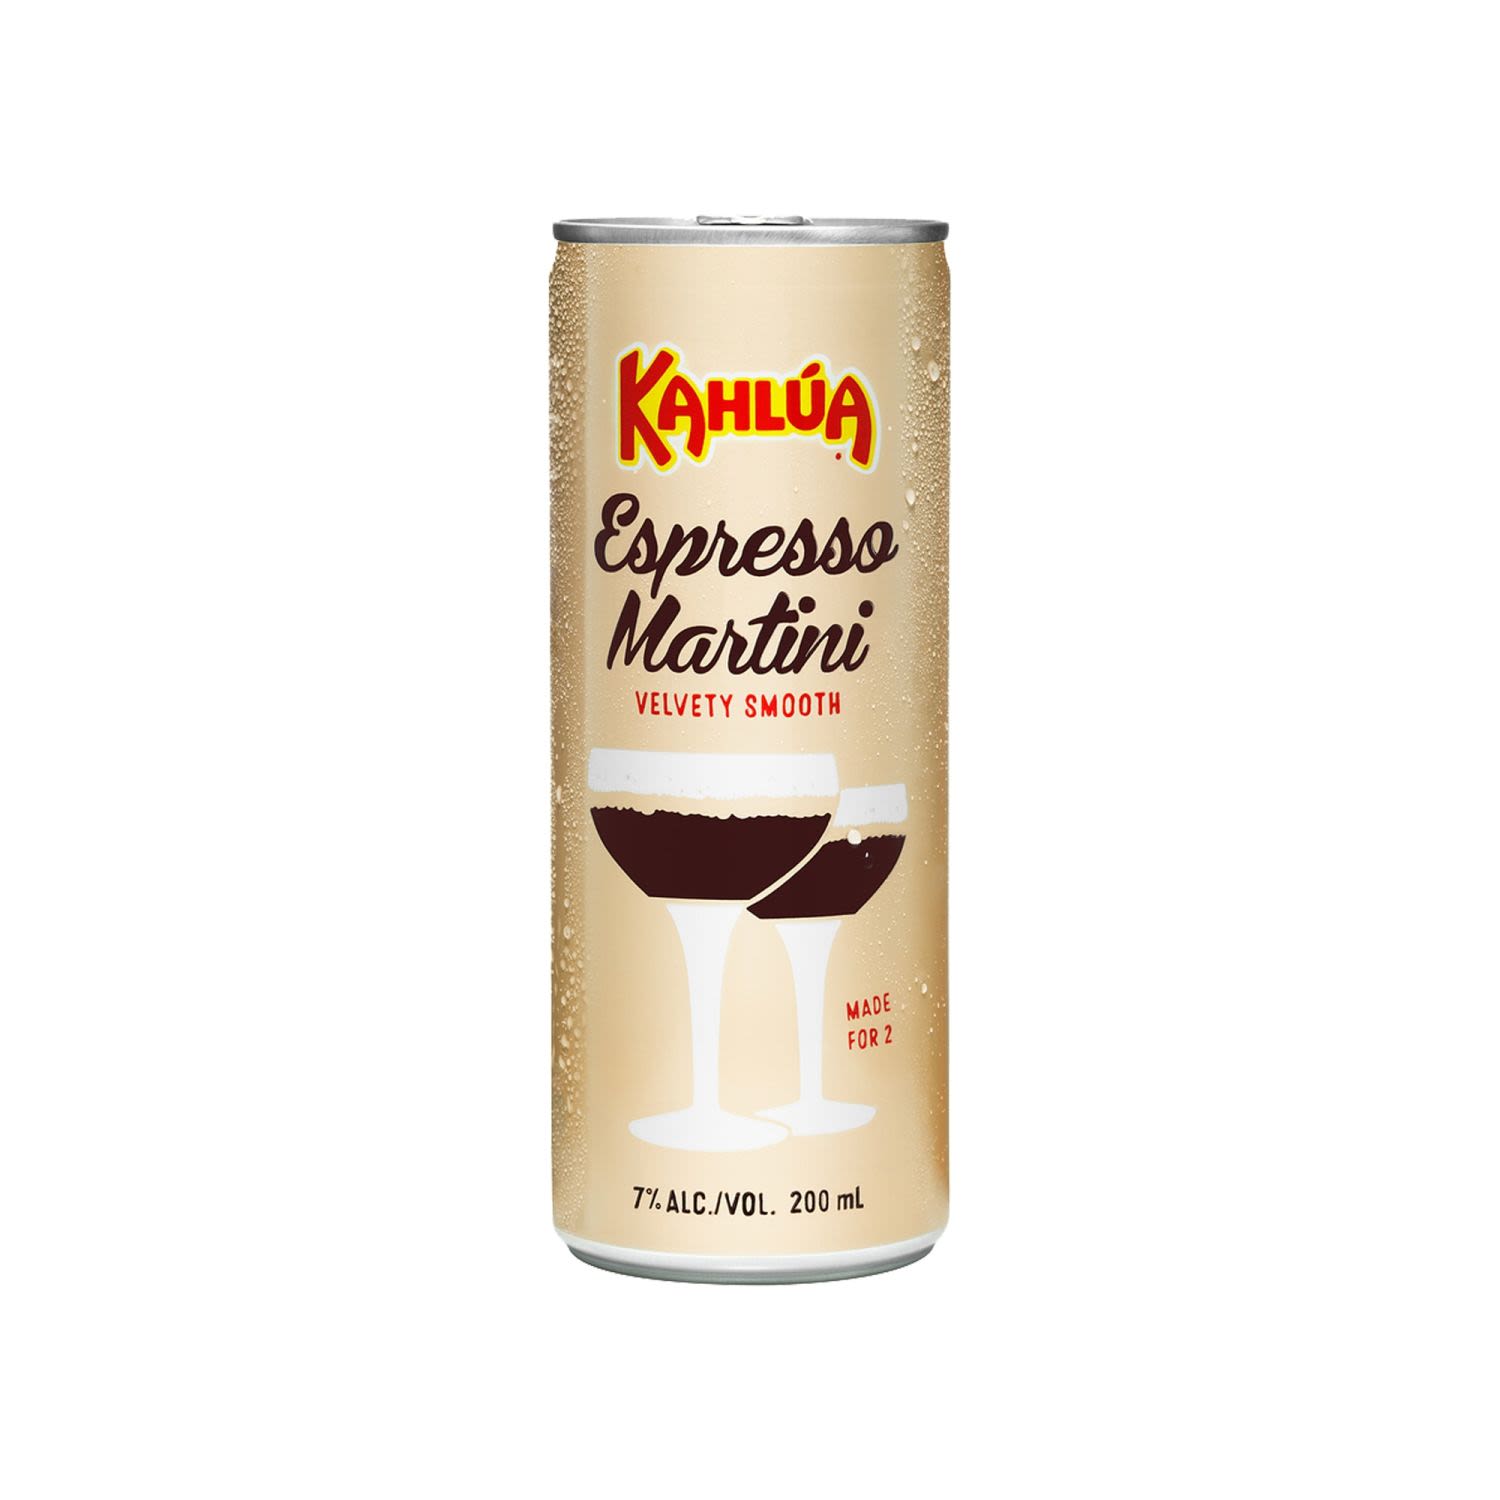 Kahlua Espresso Martini 200mL<br /> <br />Alcohol Volume: 7.00%<br /><br />Pack Format: 24 Pack<br /><br />Standard Drinks: 1.1</br /><br />Pack Type: Can<br />